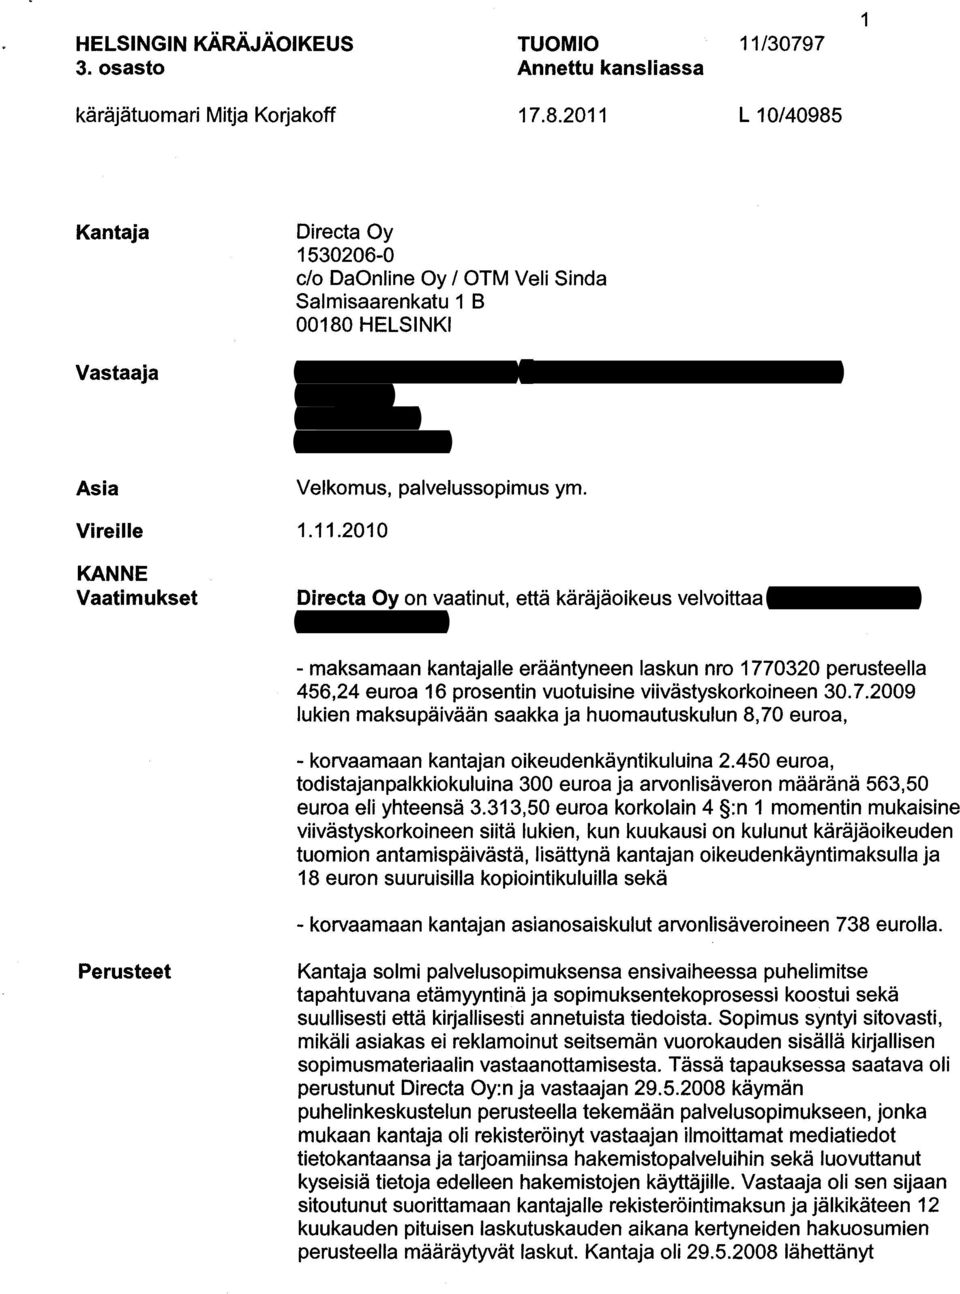 Juhani Pelkonen 1307826-1 Puntarikatu 1 20780 KAARINA Velkomus, palvelussopimus ym. 1.11.